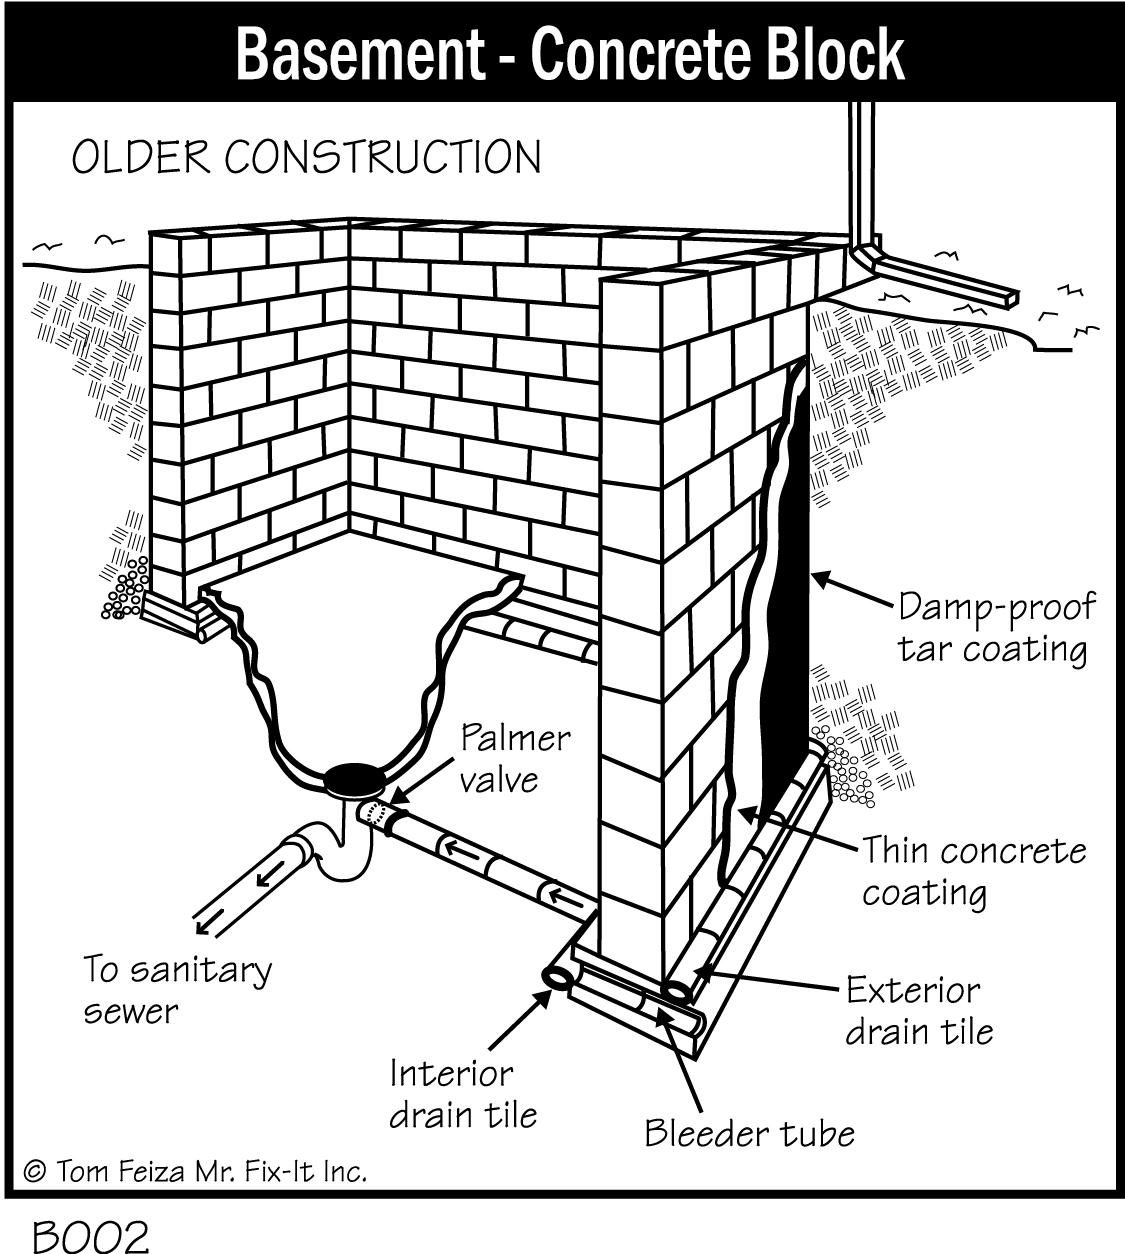 B002 - Basement - Concrete Block (Older Construction)